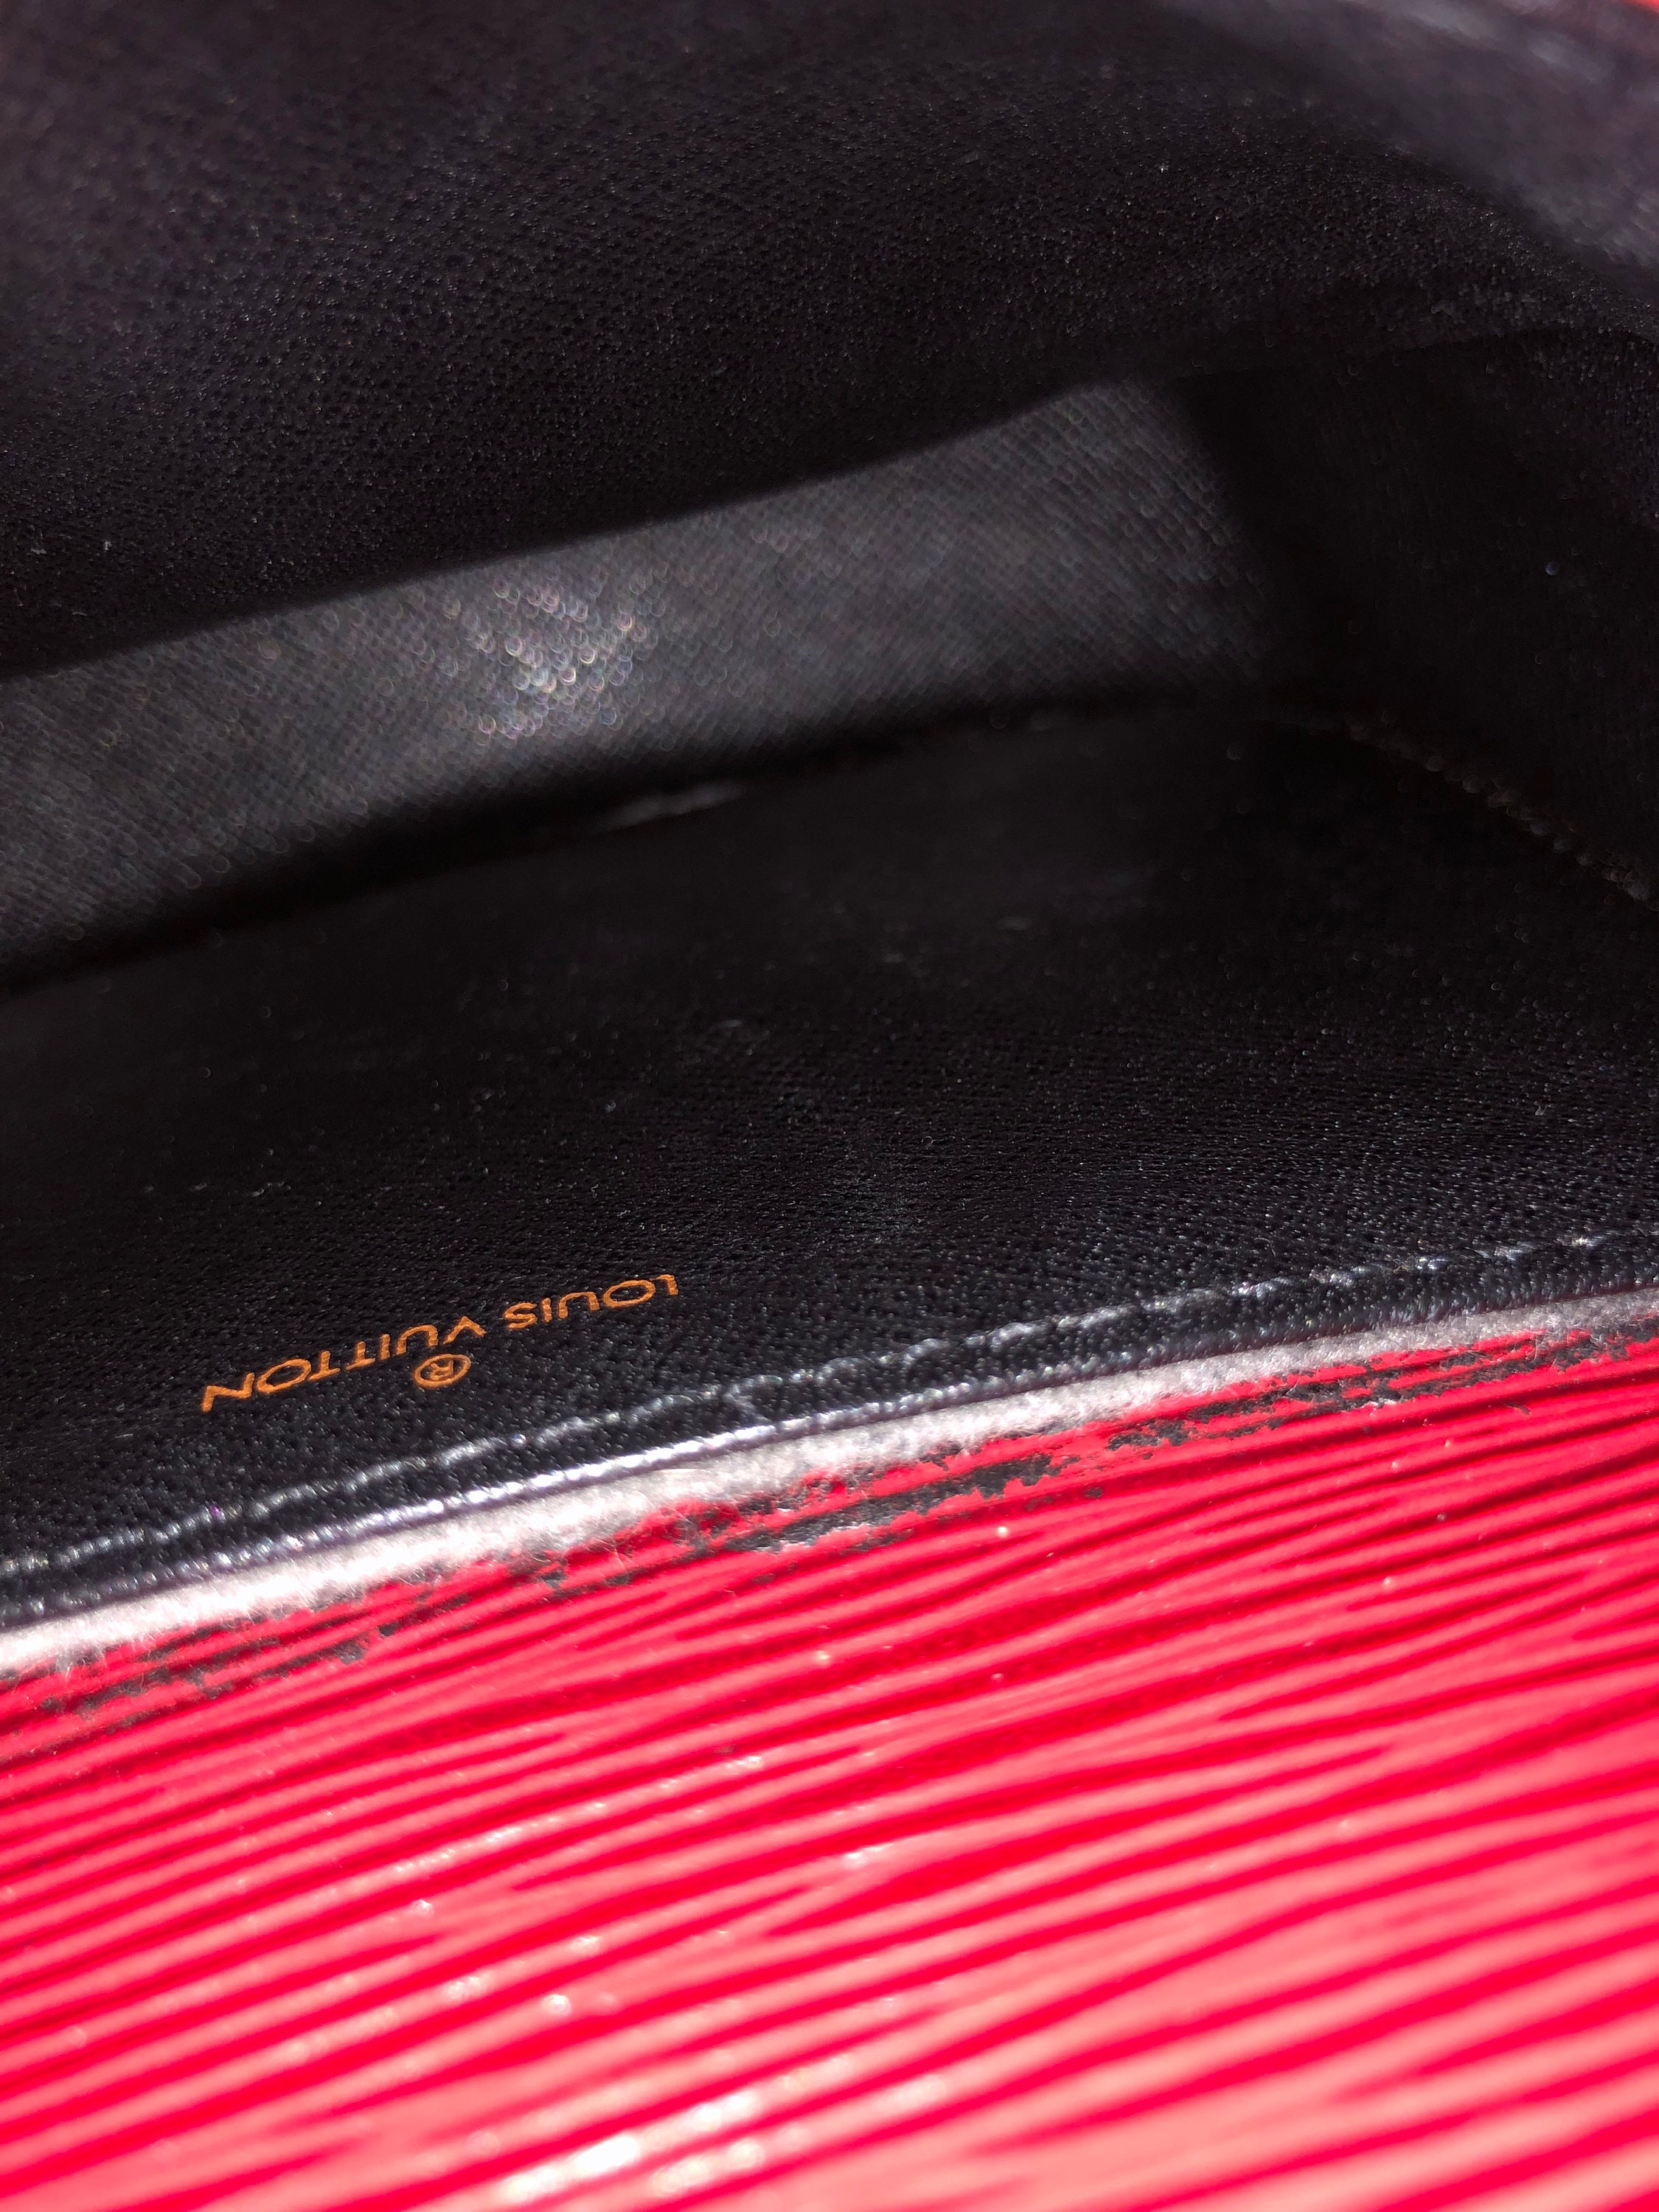 Replica Louis Vuitton M54155 Saint Cloud Crossbody Bag Epi Leather